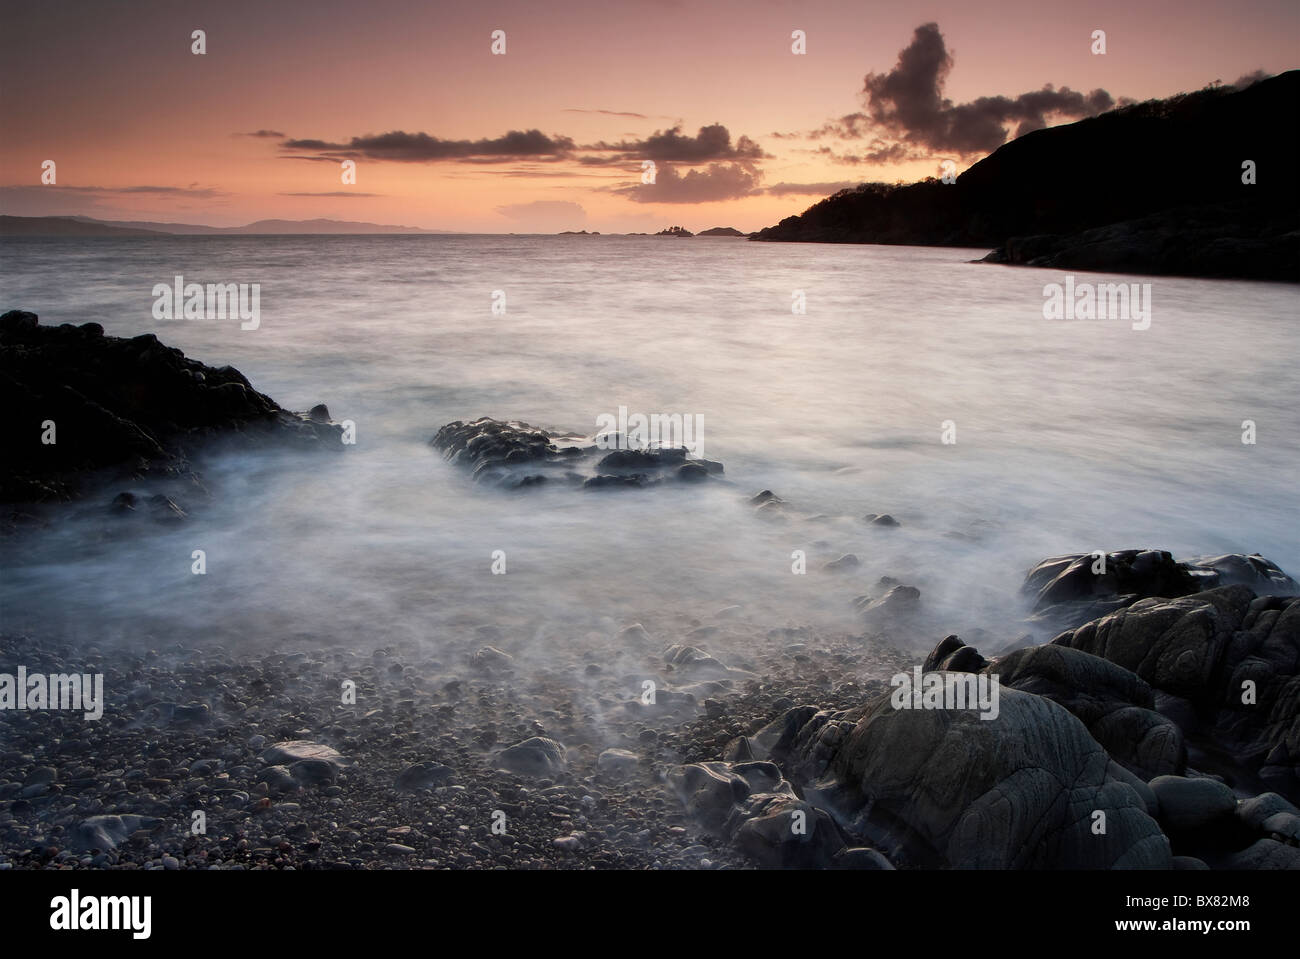 Onde che si infrangono su una rocciosa spiaggia di ghiaia al tramonto durante una lunga esposizione creando splendide e immagini mistiche di Scozia Foto Stock